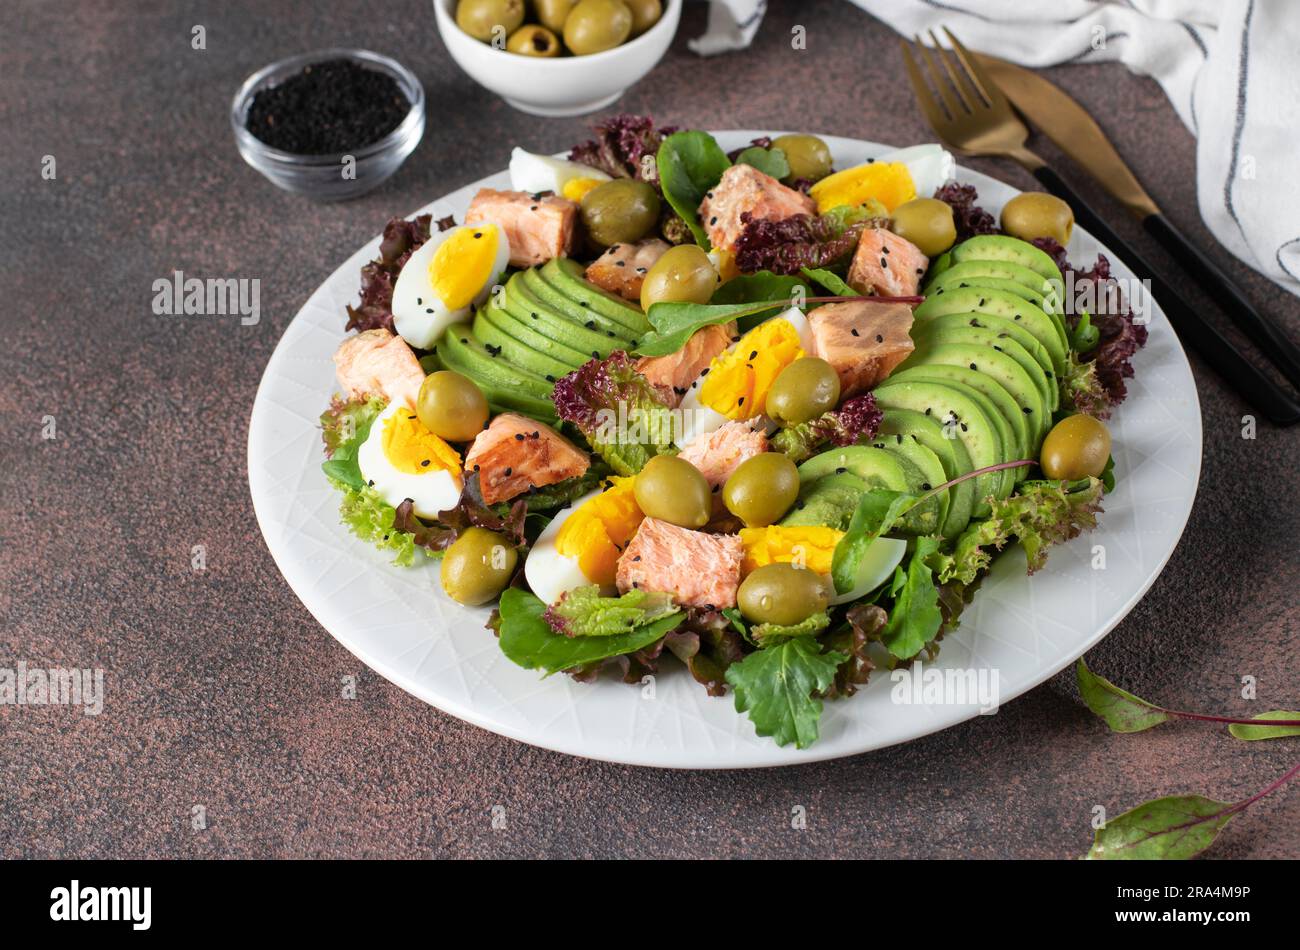 Insalata con salmone al forno, avocado, uova e olive, cosparsa di semi di sesamo su un piatto bianco su sfondo marrone Foto Stock